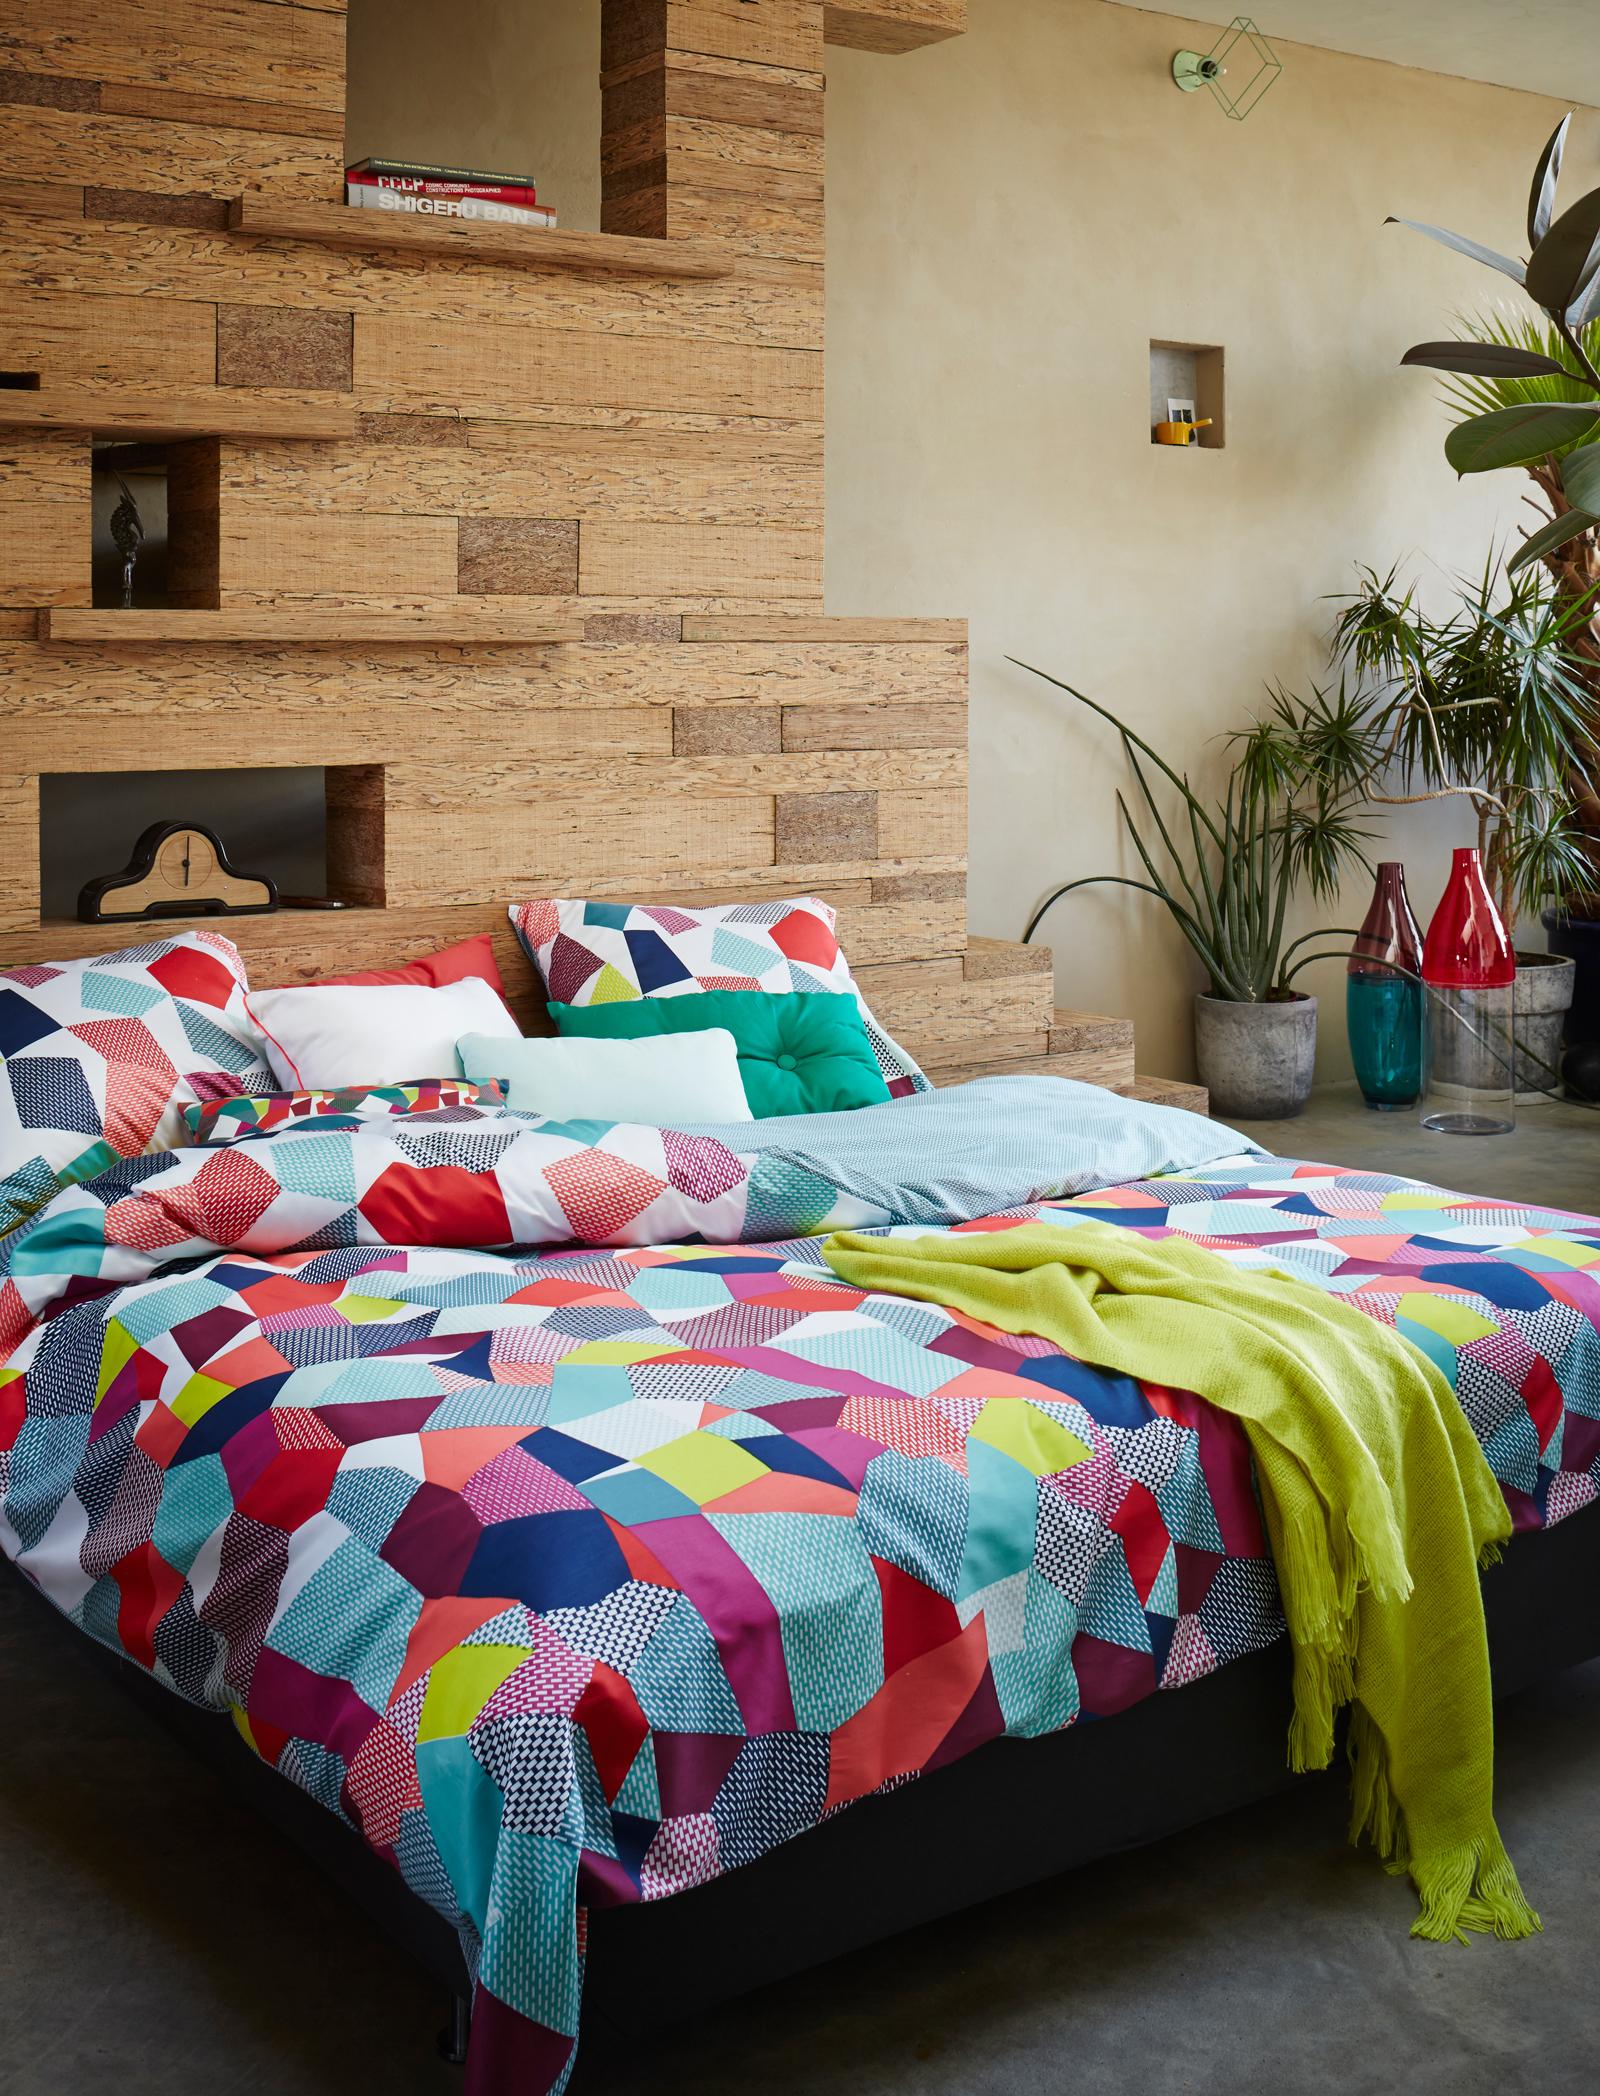 Bettbezug in Patchwork-Optik #bettwäsche #buntebettwäsche #beigewandfarbe ©Essenza Home/Essenza